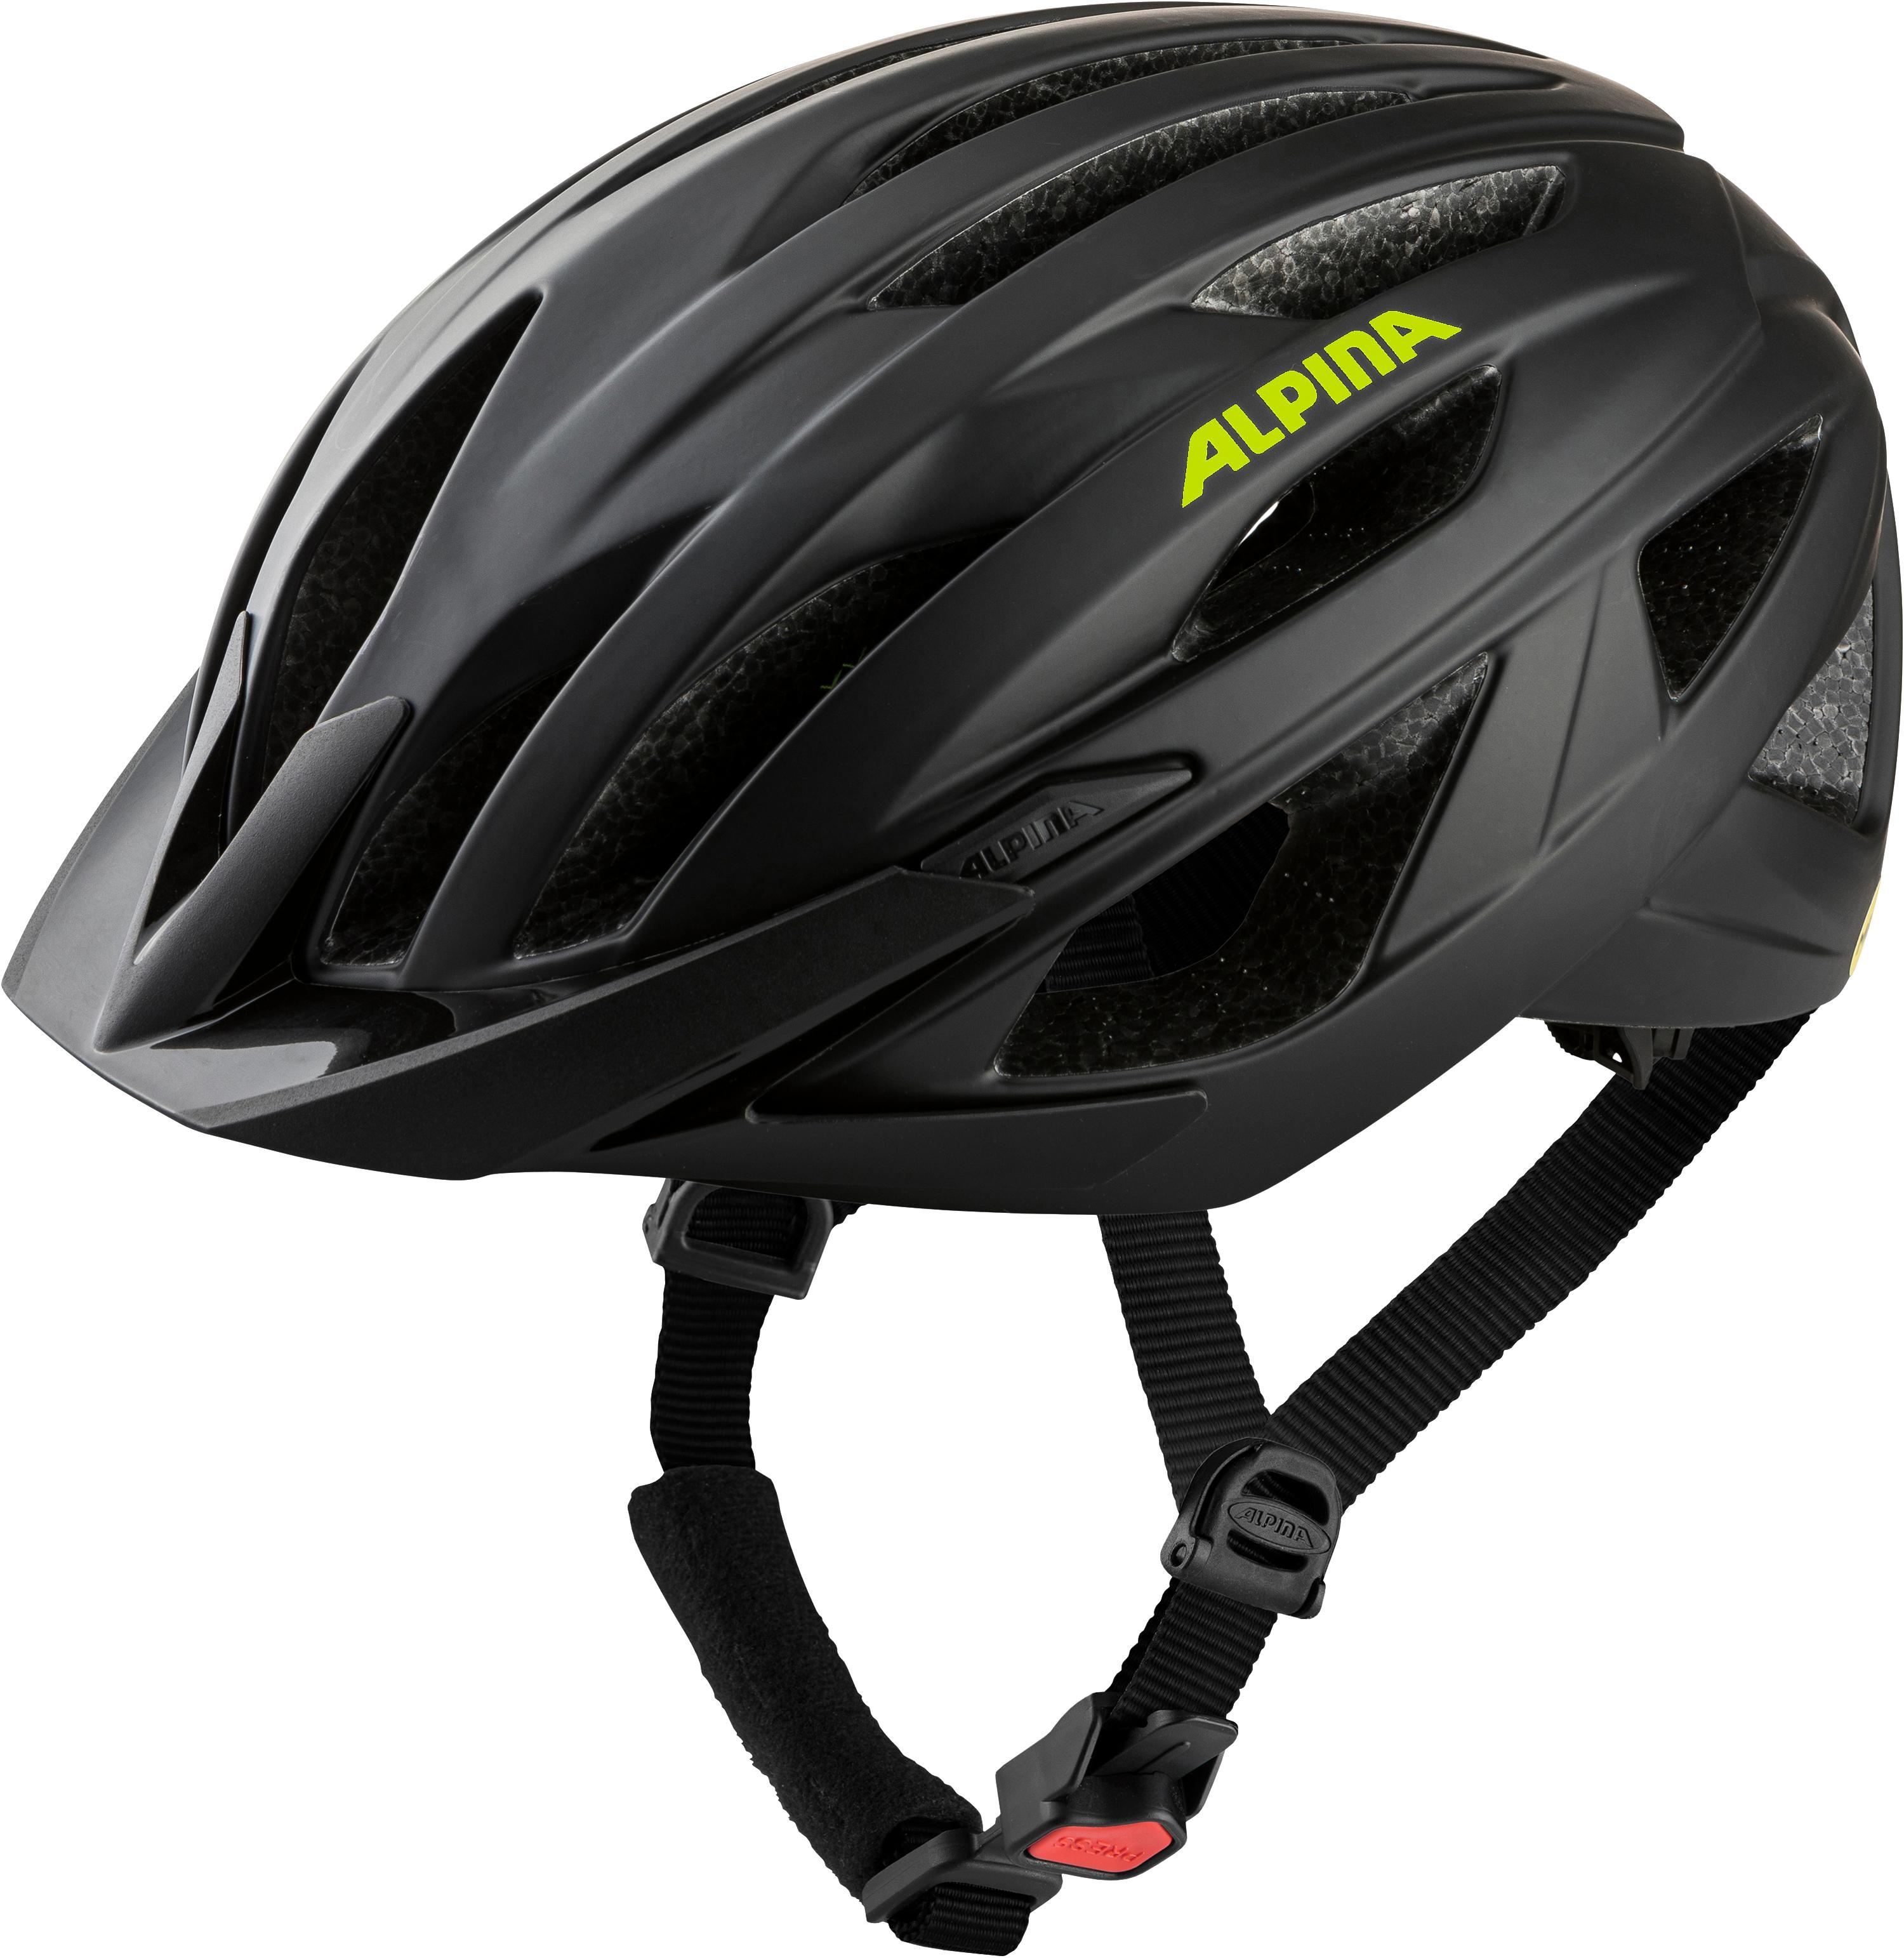 Alpina Parana Fahrrad Helm 58-63cm | Schwarz - neon gelb matt